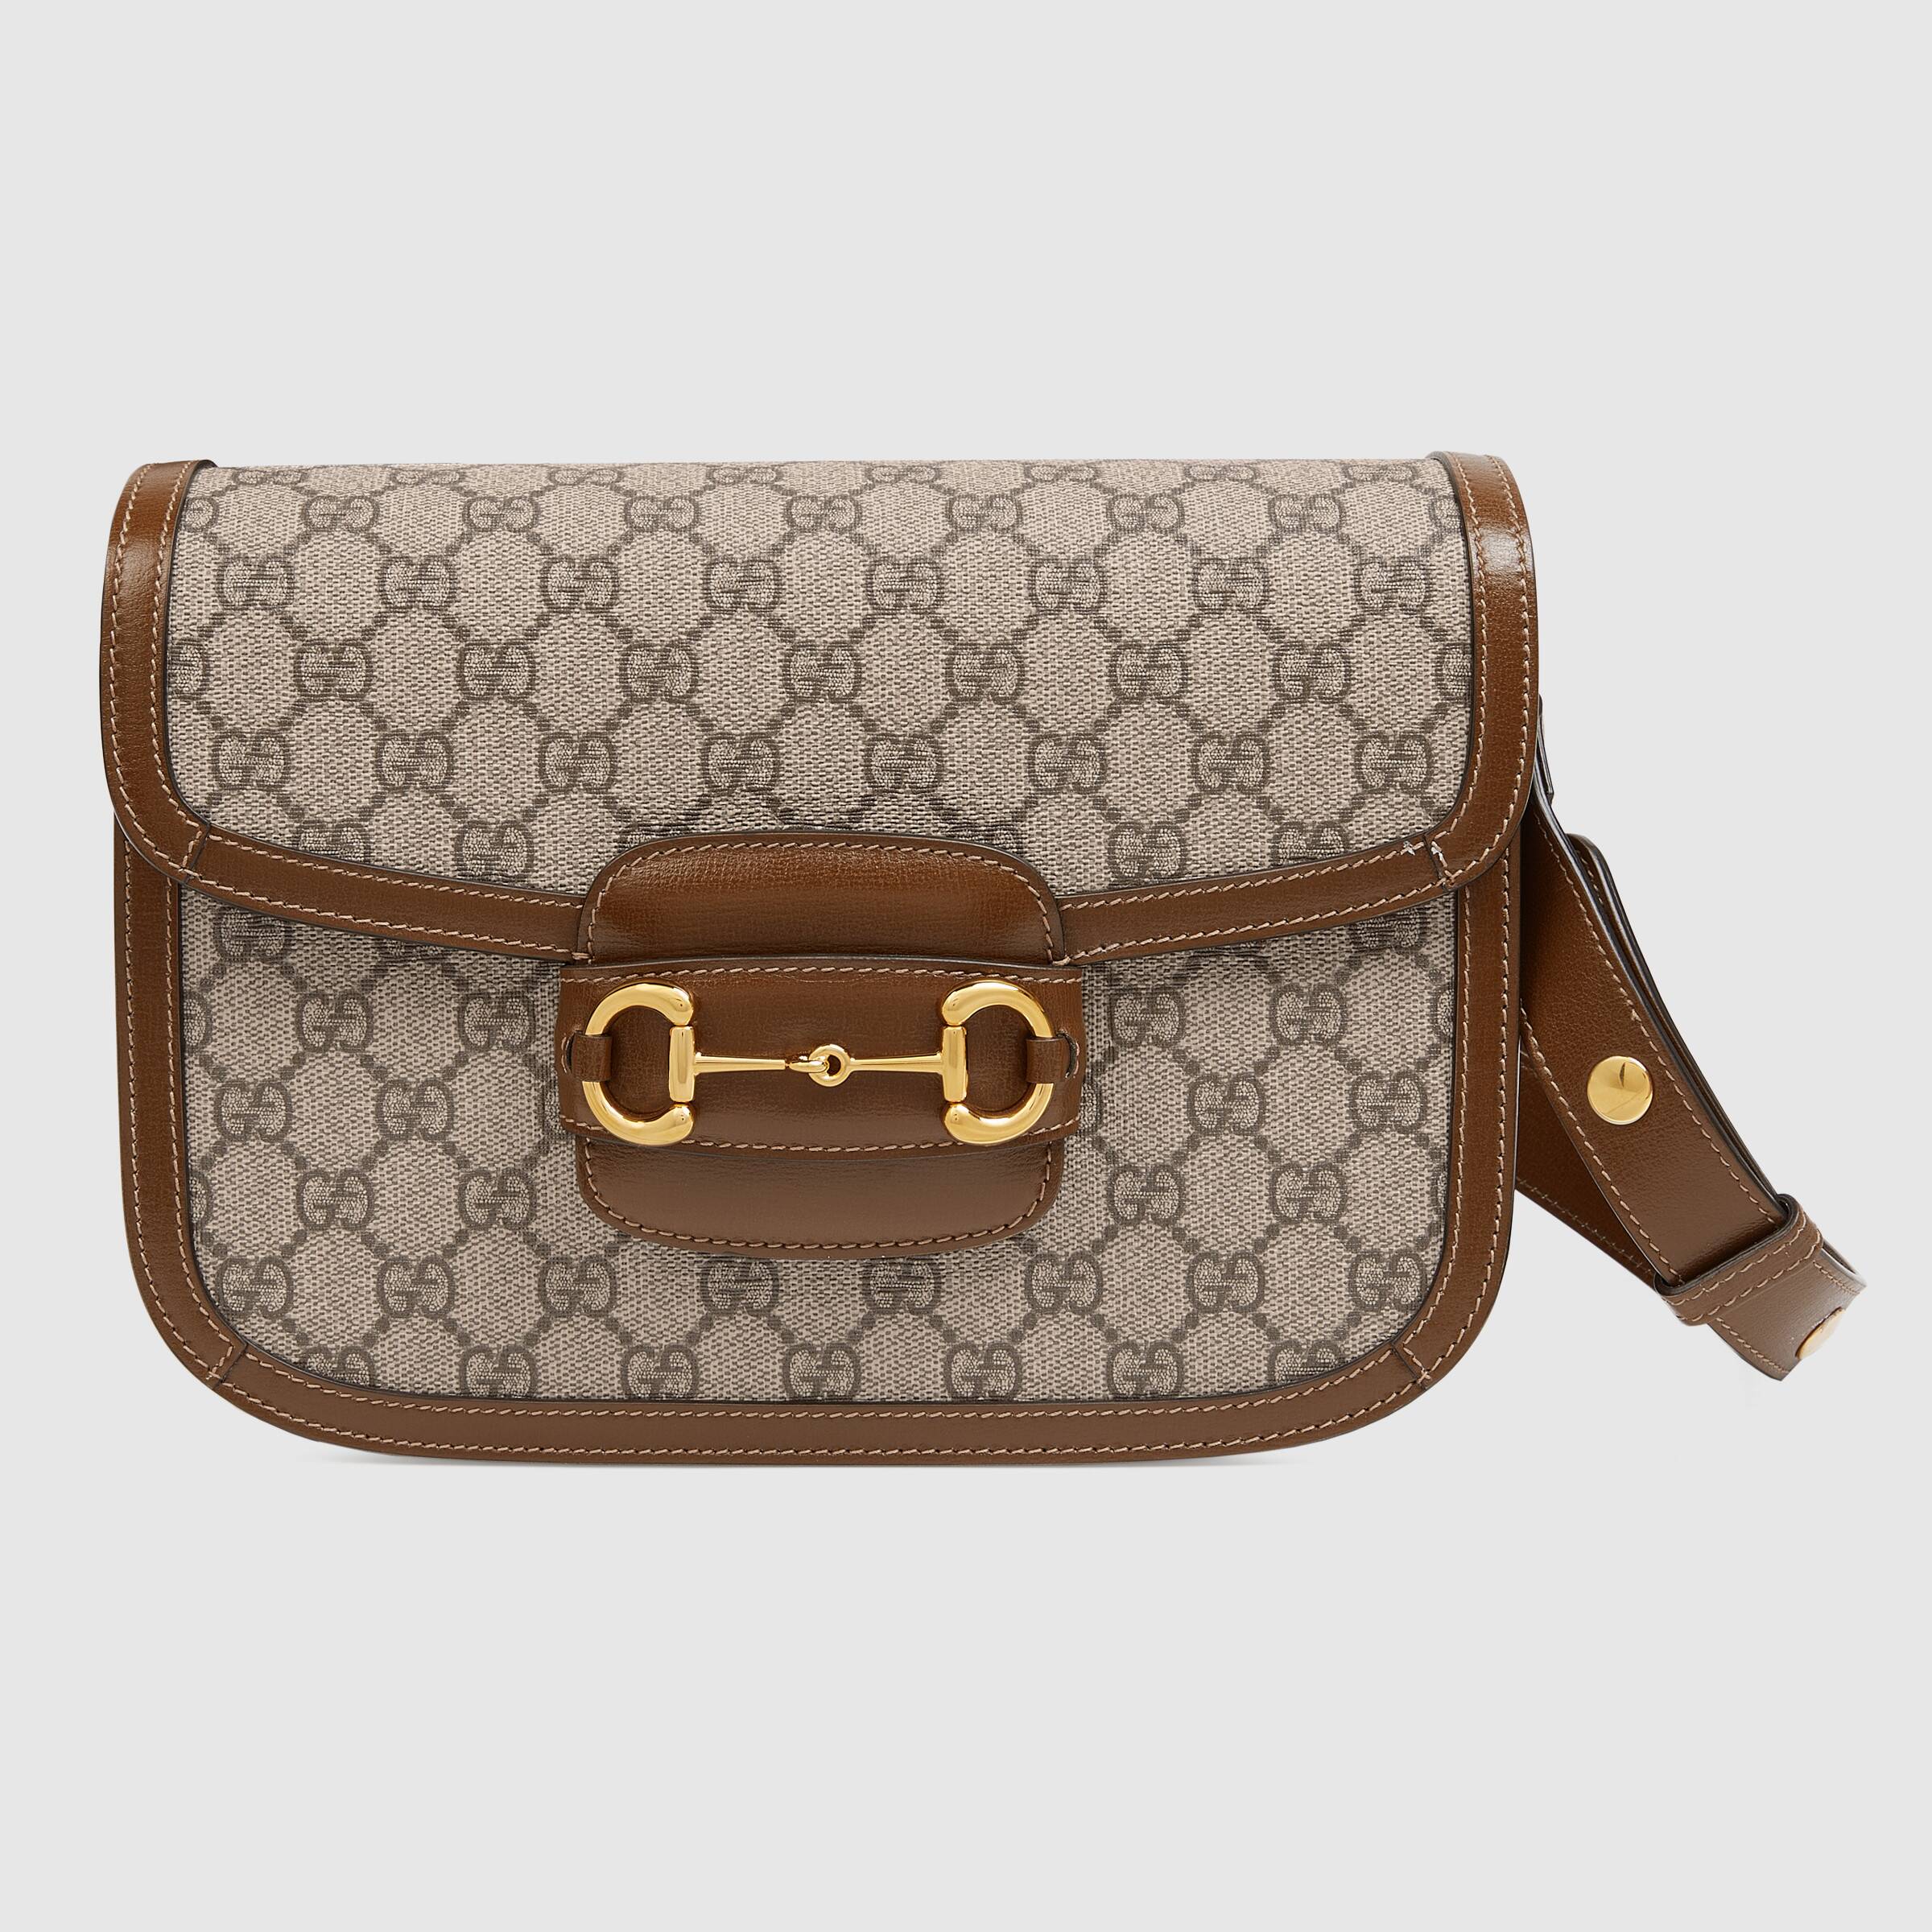 new design gucci handbag